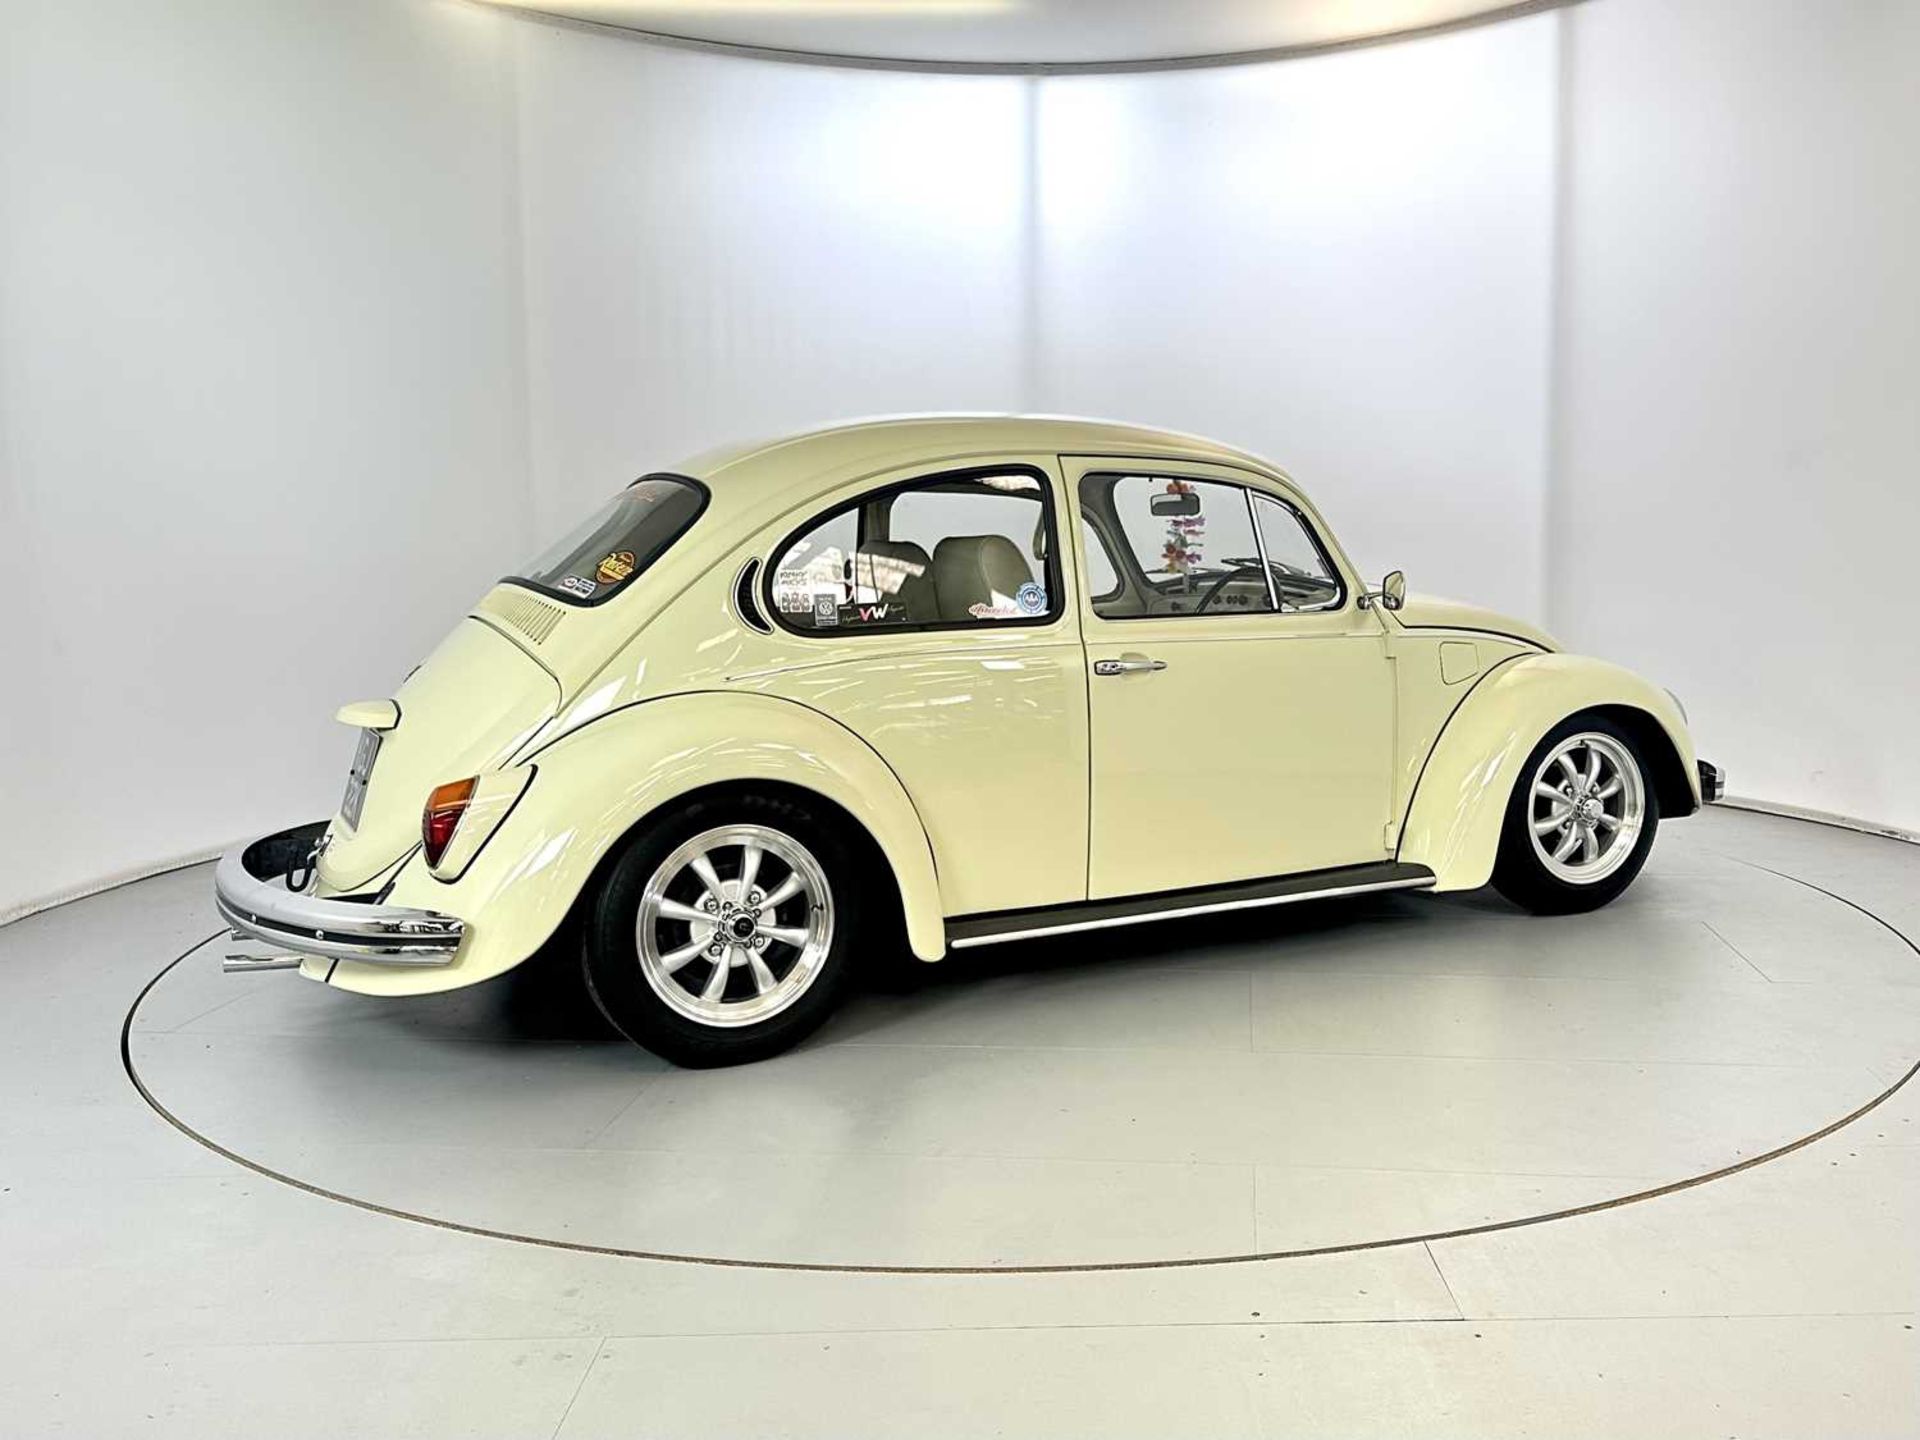 1971 Volkswagen Beetle - Image 10 of 30